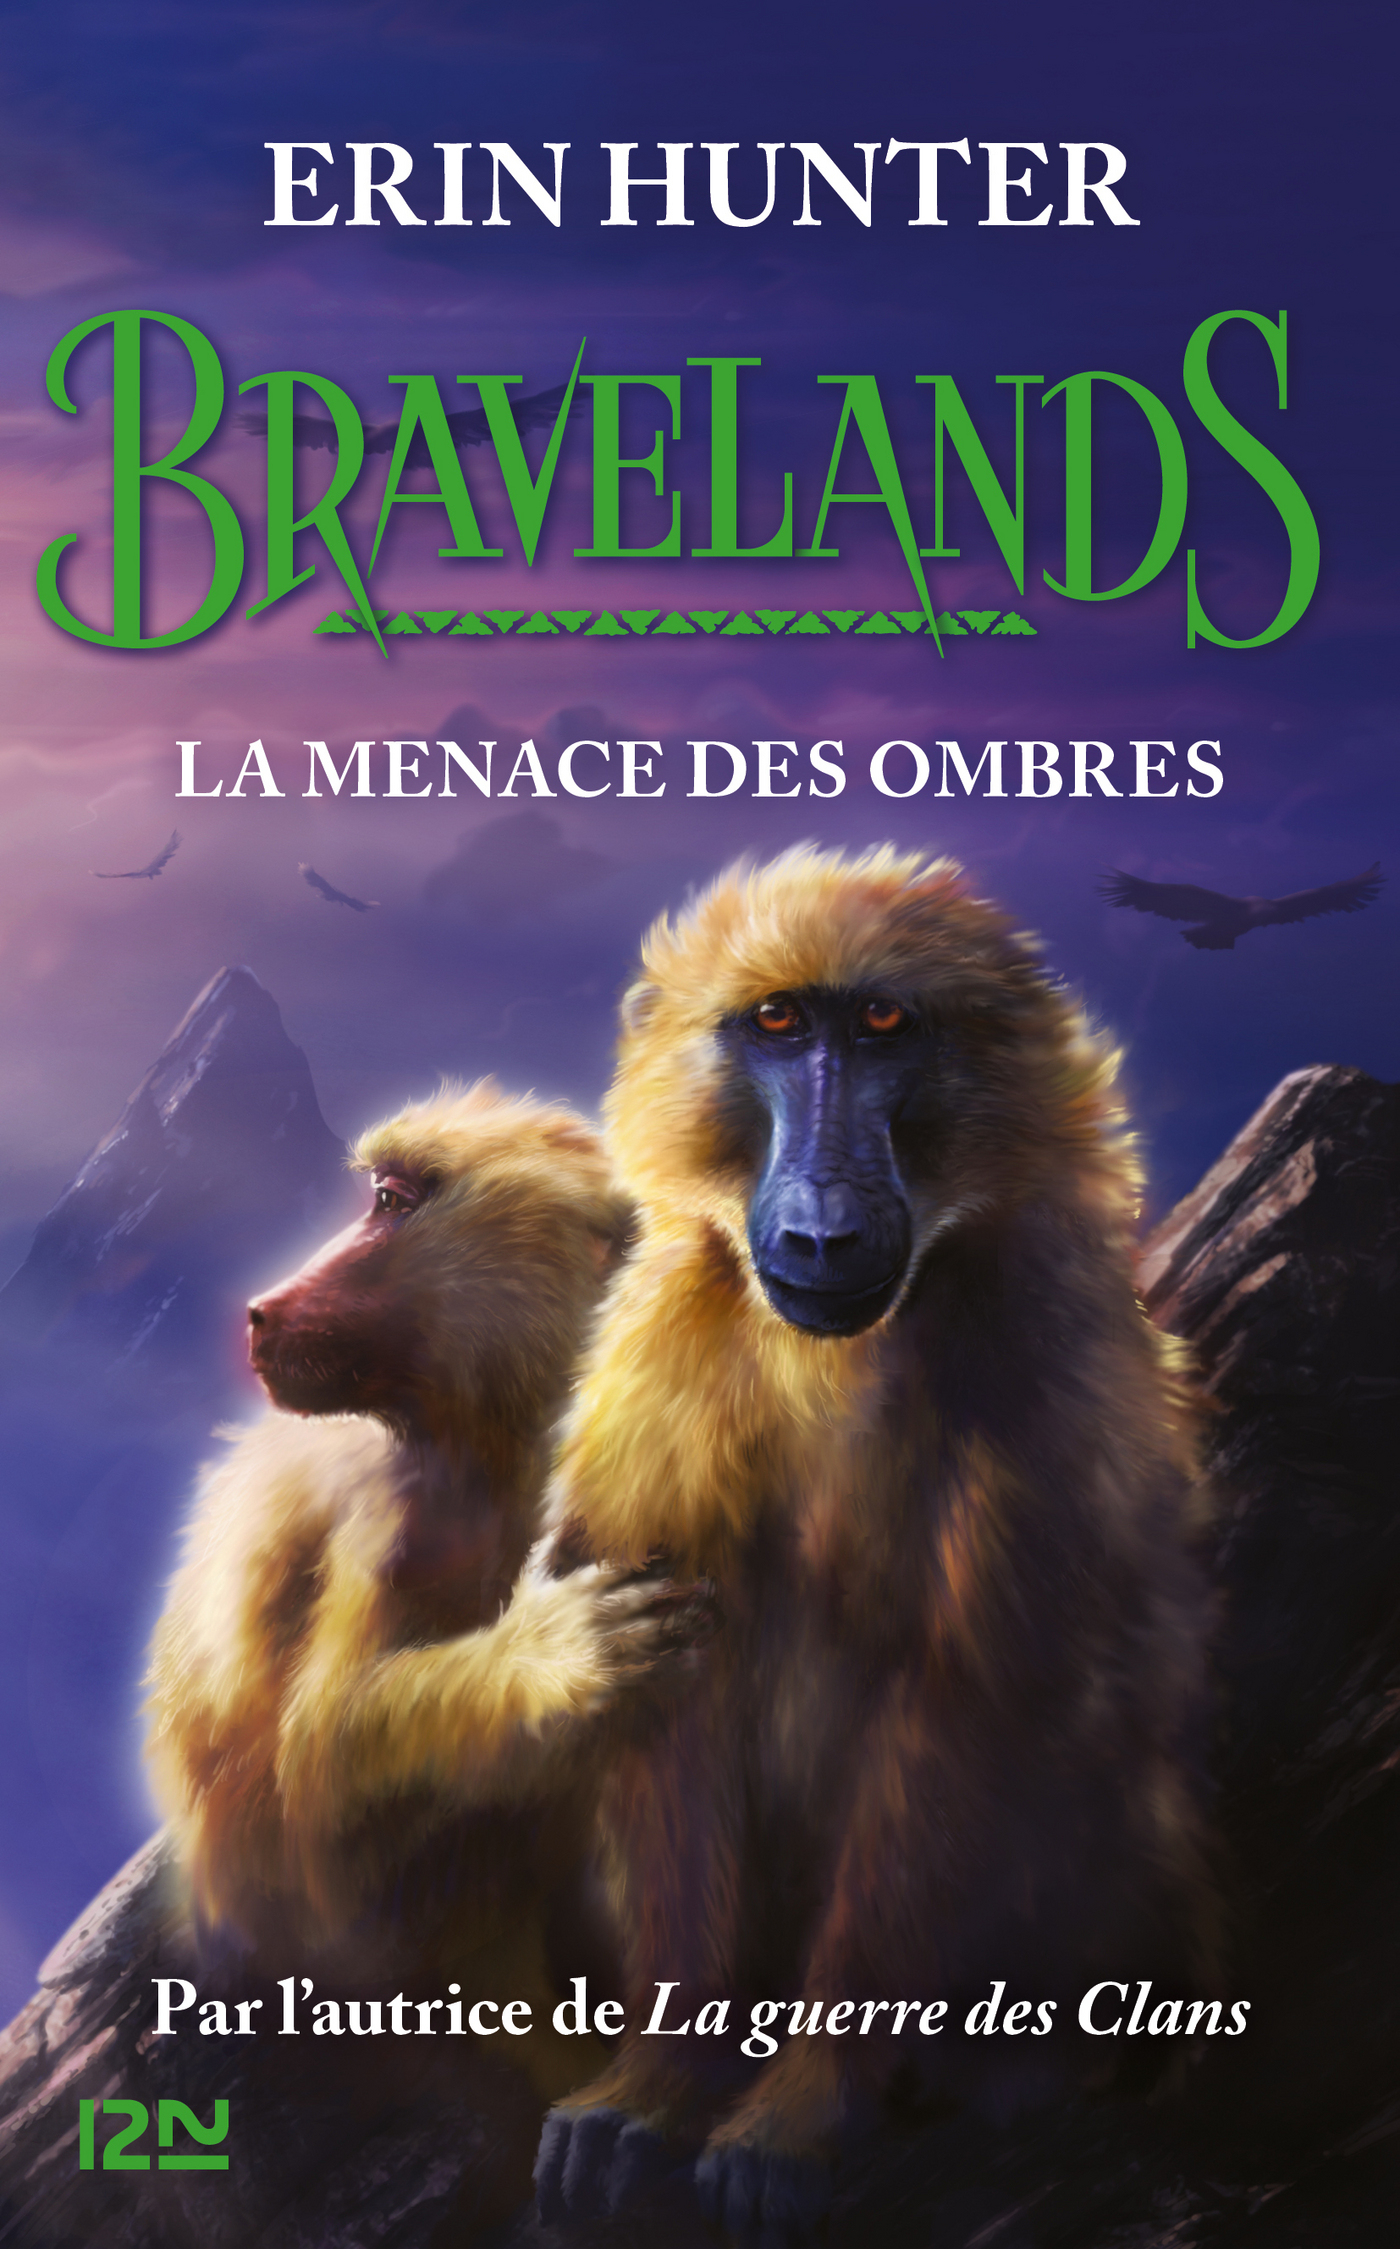 Afficher "Bravelands - Tome 4 : La menace des ombres"